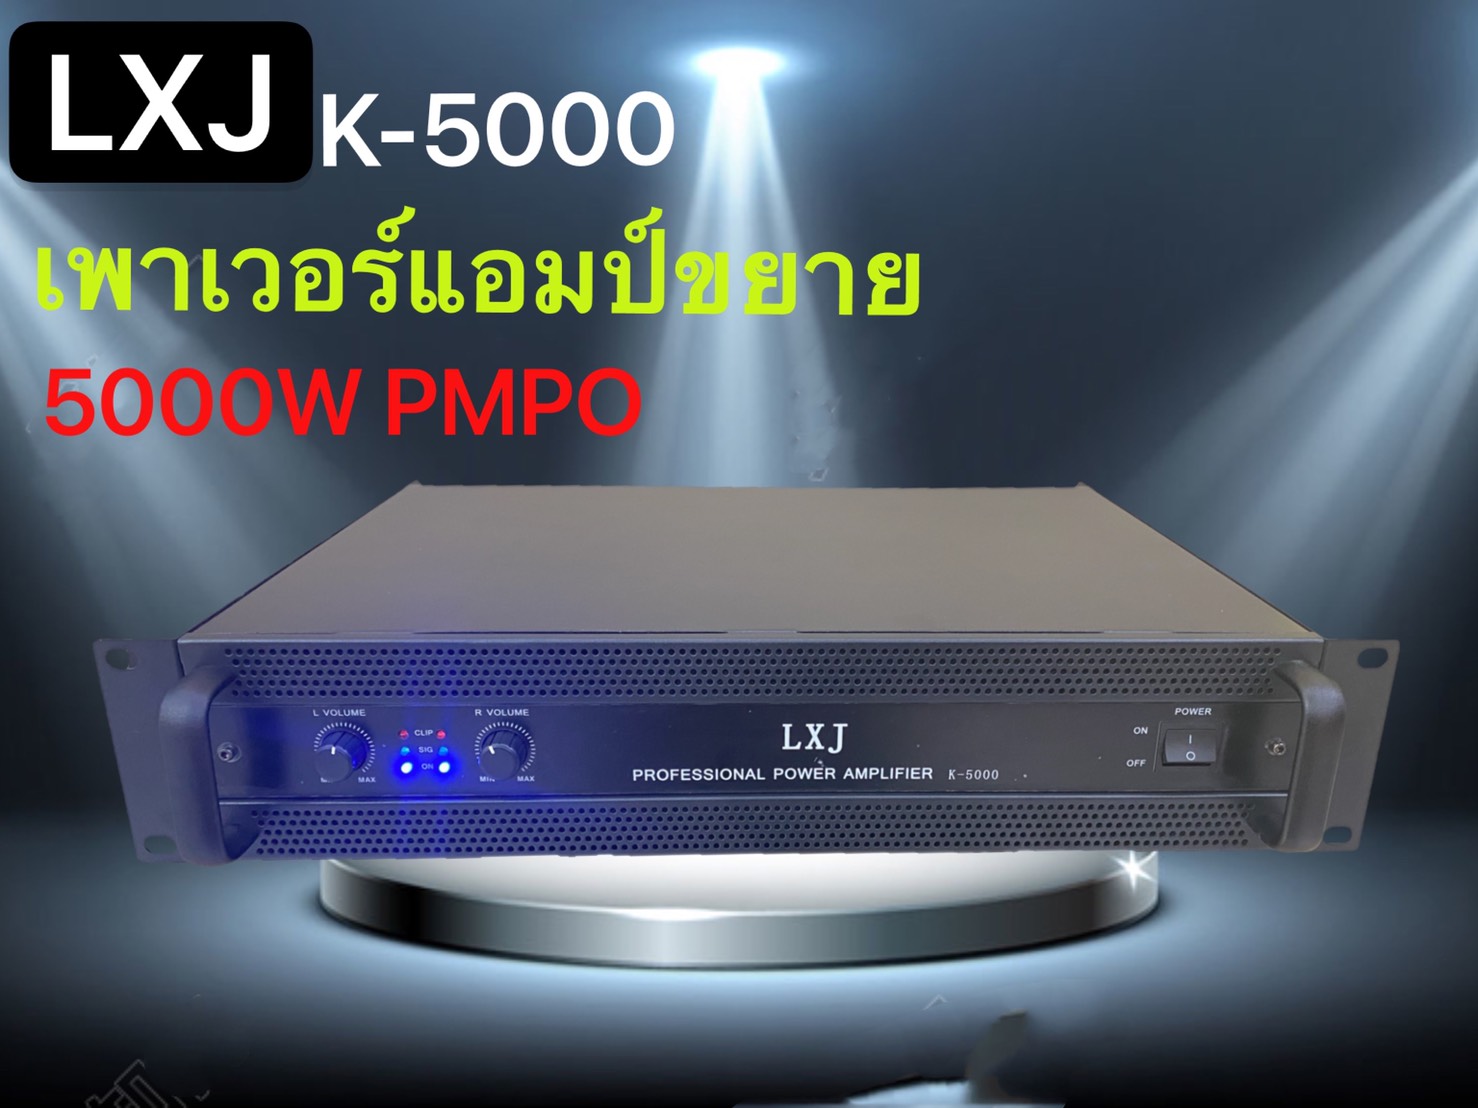 LXJ เพาเวอร์แอมป์ 5000วัตต์ PM / PO เครื่องขยายเสียง รุ่น K-5000 มาใหม่ สวย แรง ให้พลังเสียงสุดยอด ราค้าประหยัดสุดคุ้ม ขอแนะนำ สินค้าพร้อมส่ง